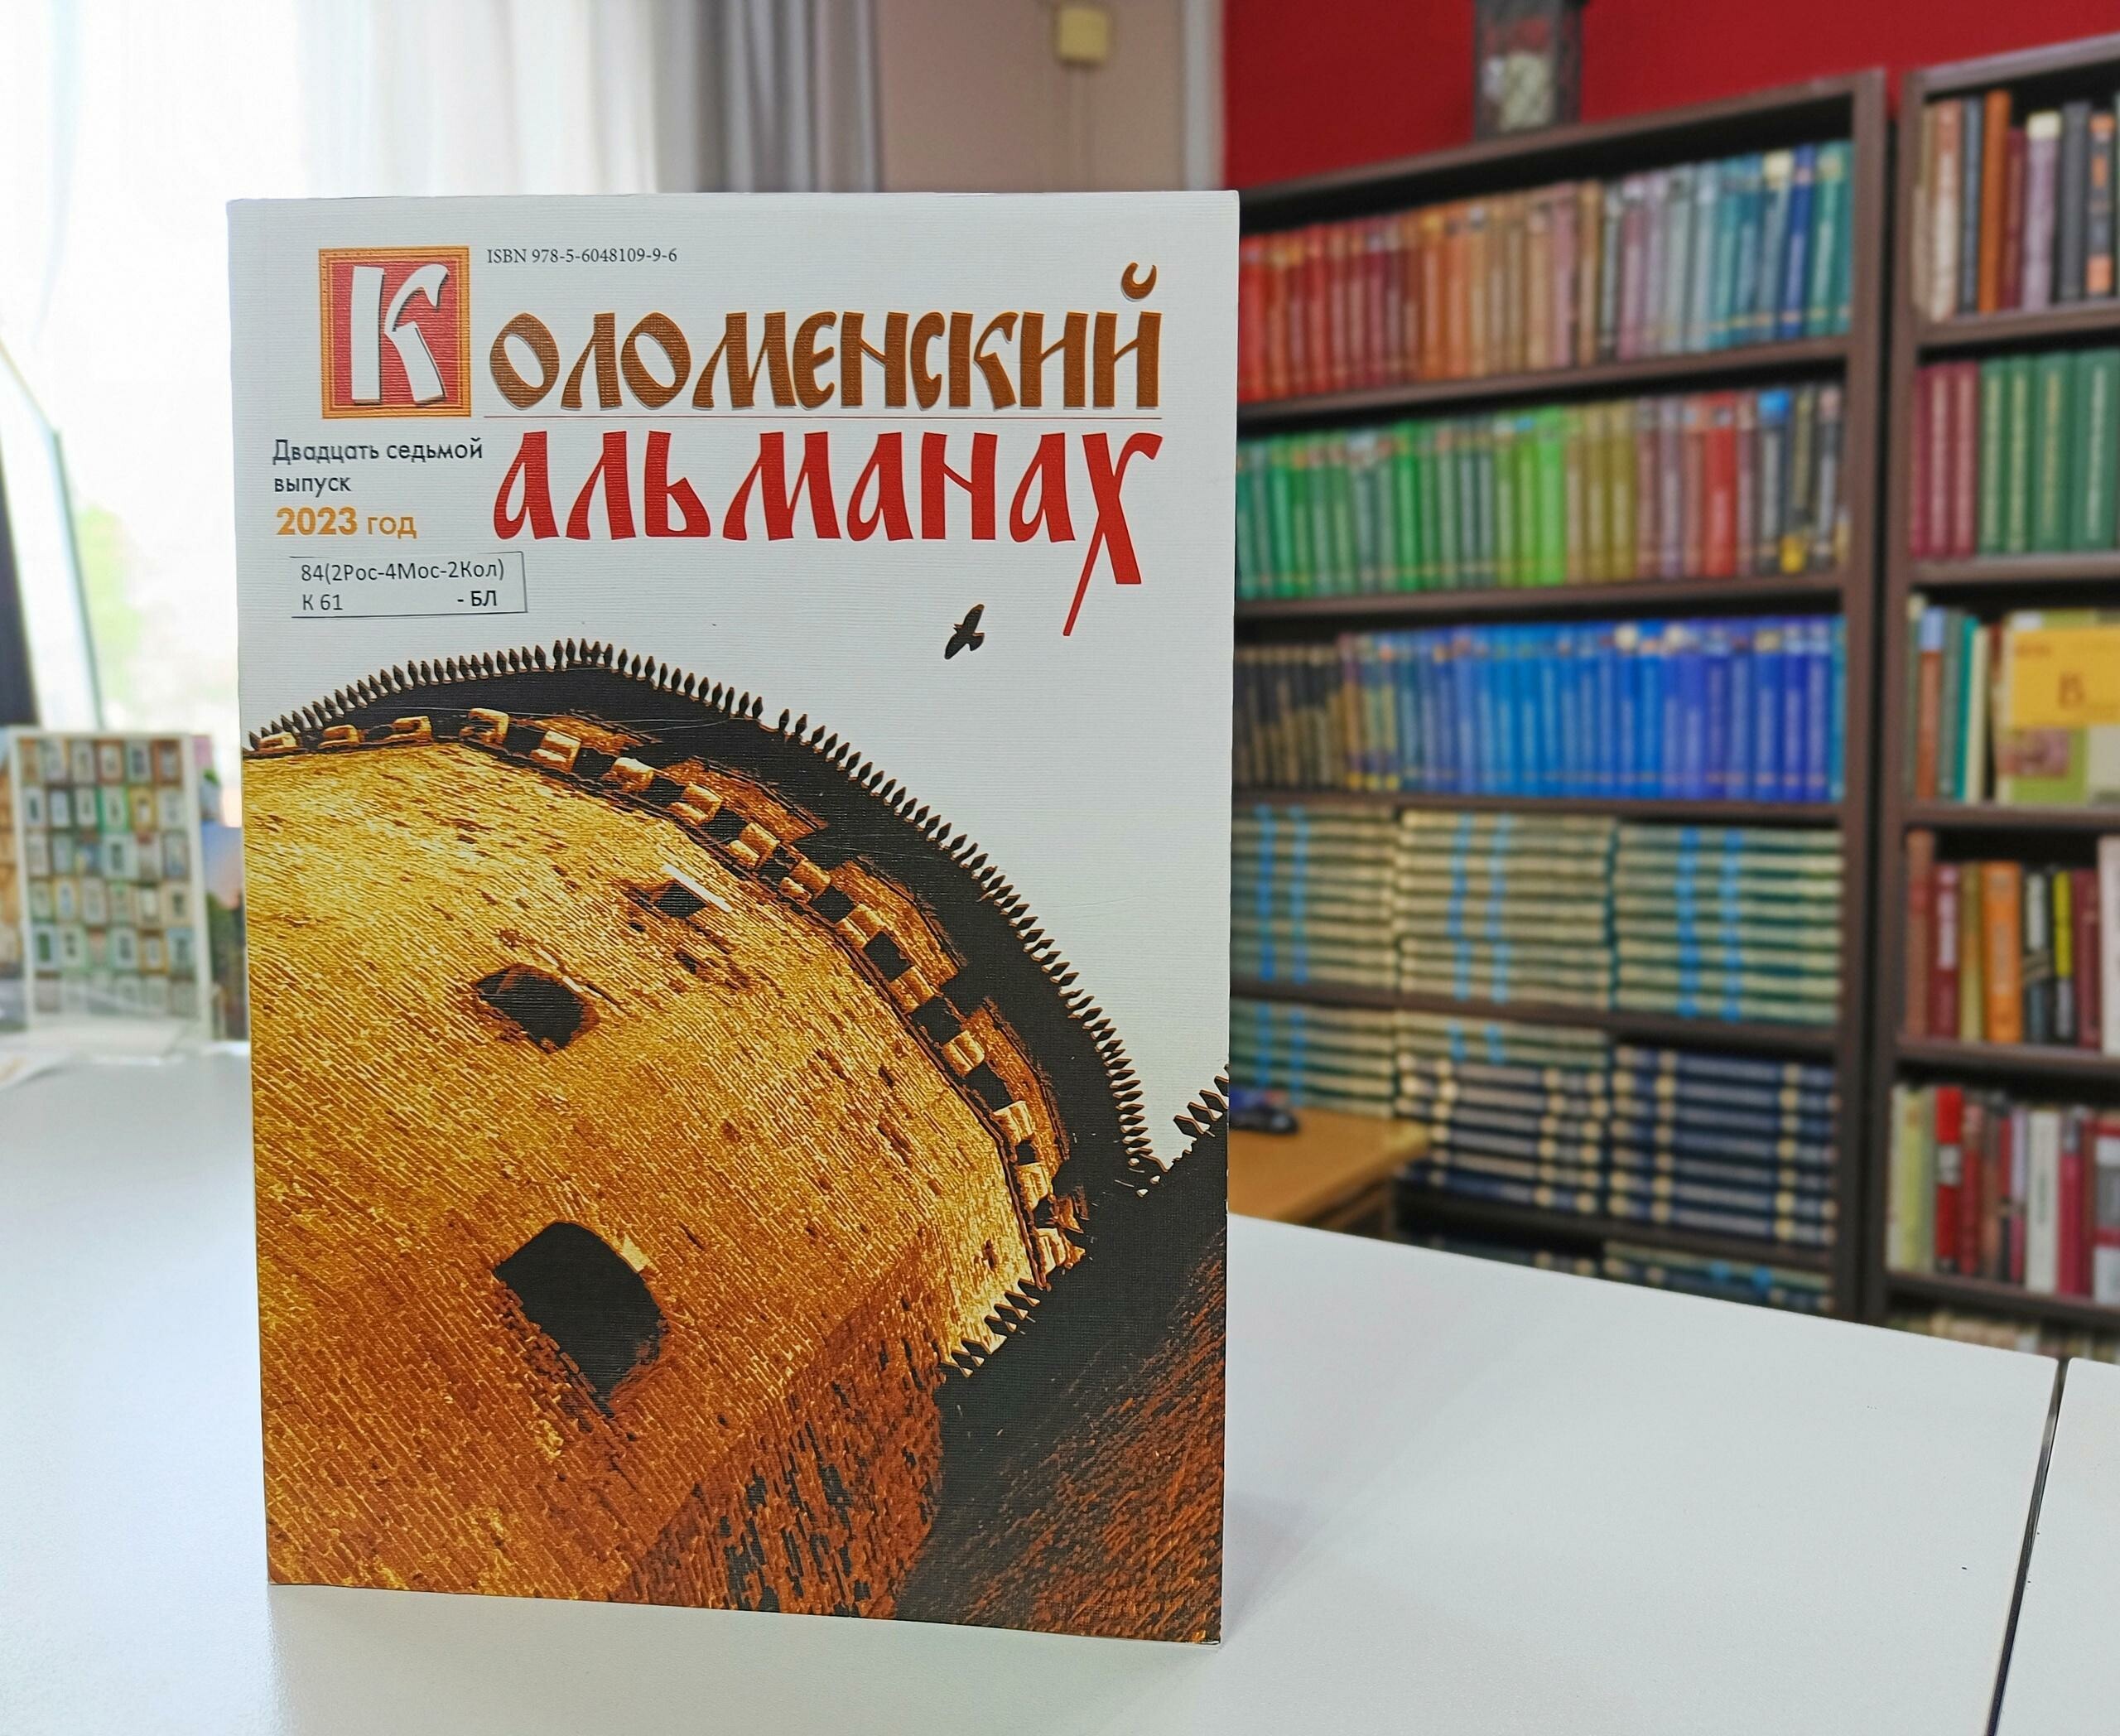 Вышел в свет 27 выпуск литературно-художественного издания «Коломенский альманах»